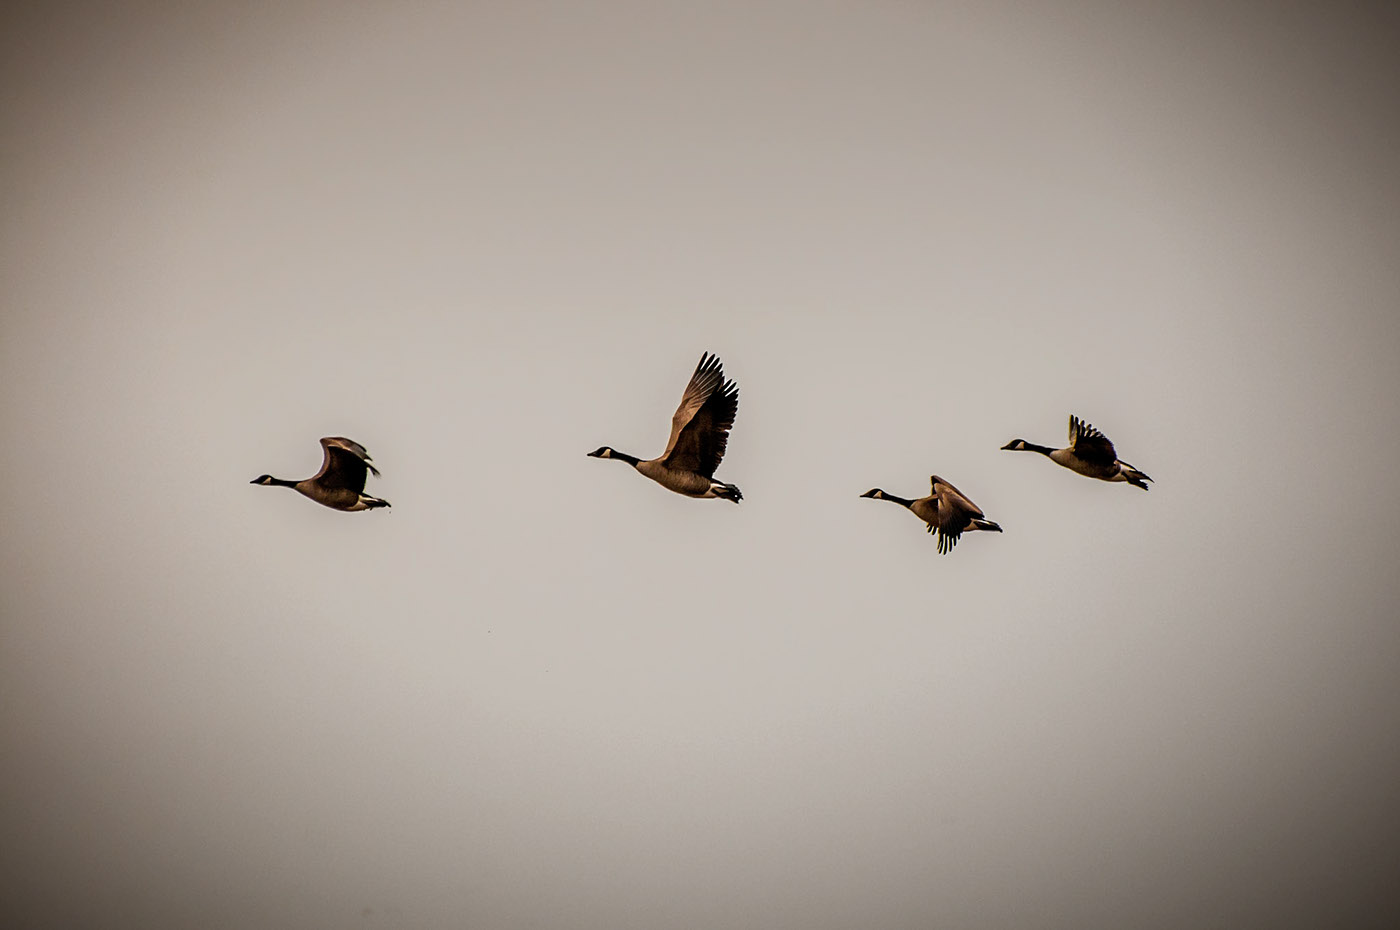 wild geese fields migration